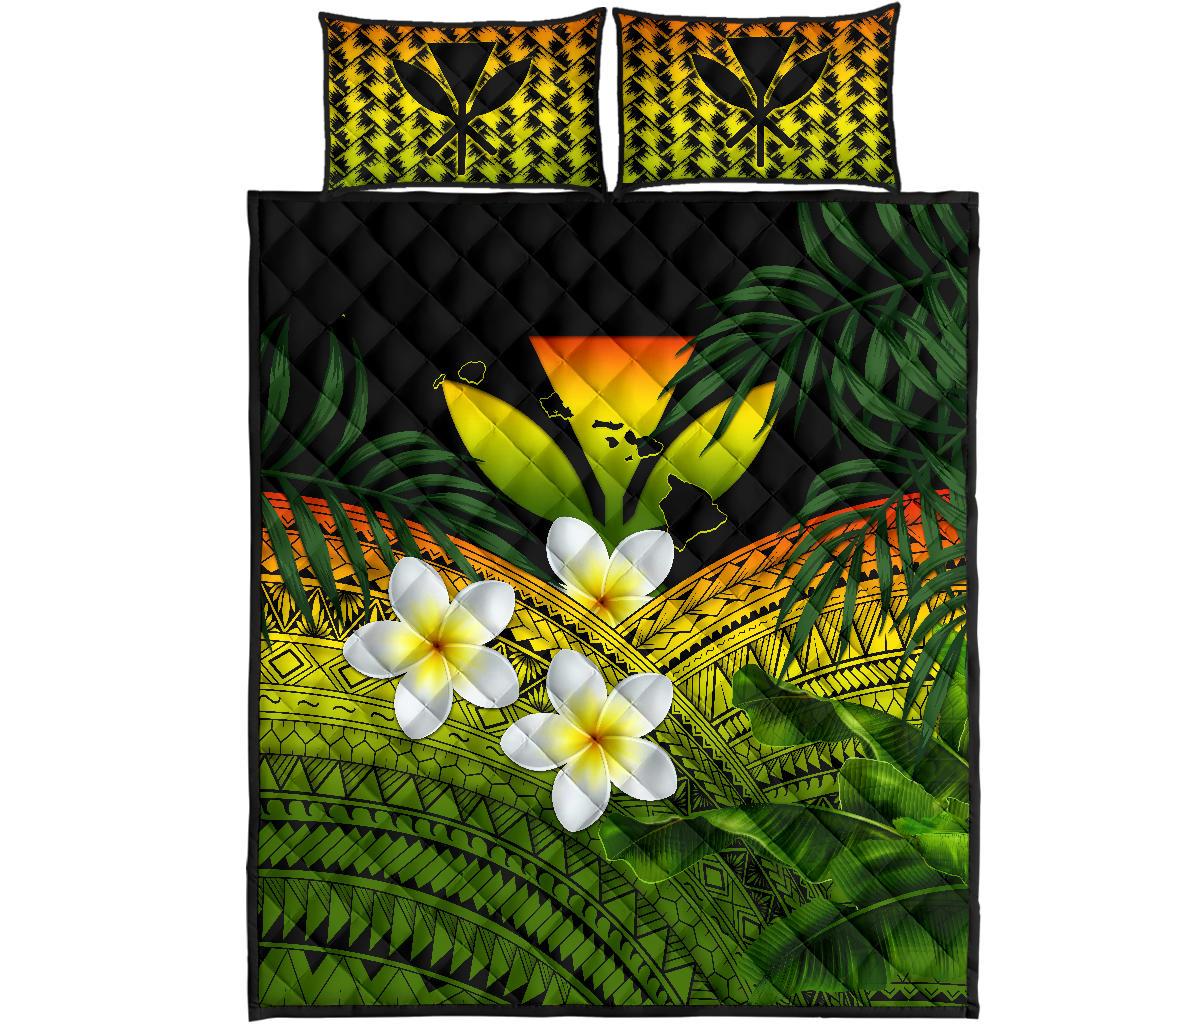 Kanaka Maoli (Hawaiian) Quilt Bed Set, Polynesian Plumeria Banana Leaves Reggae